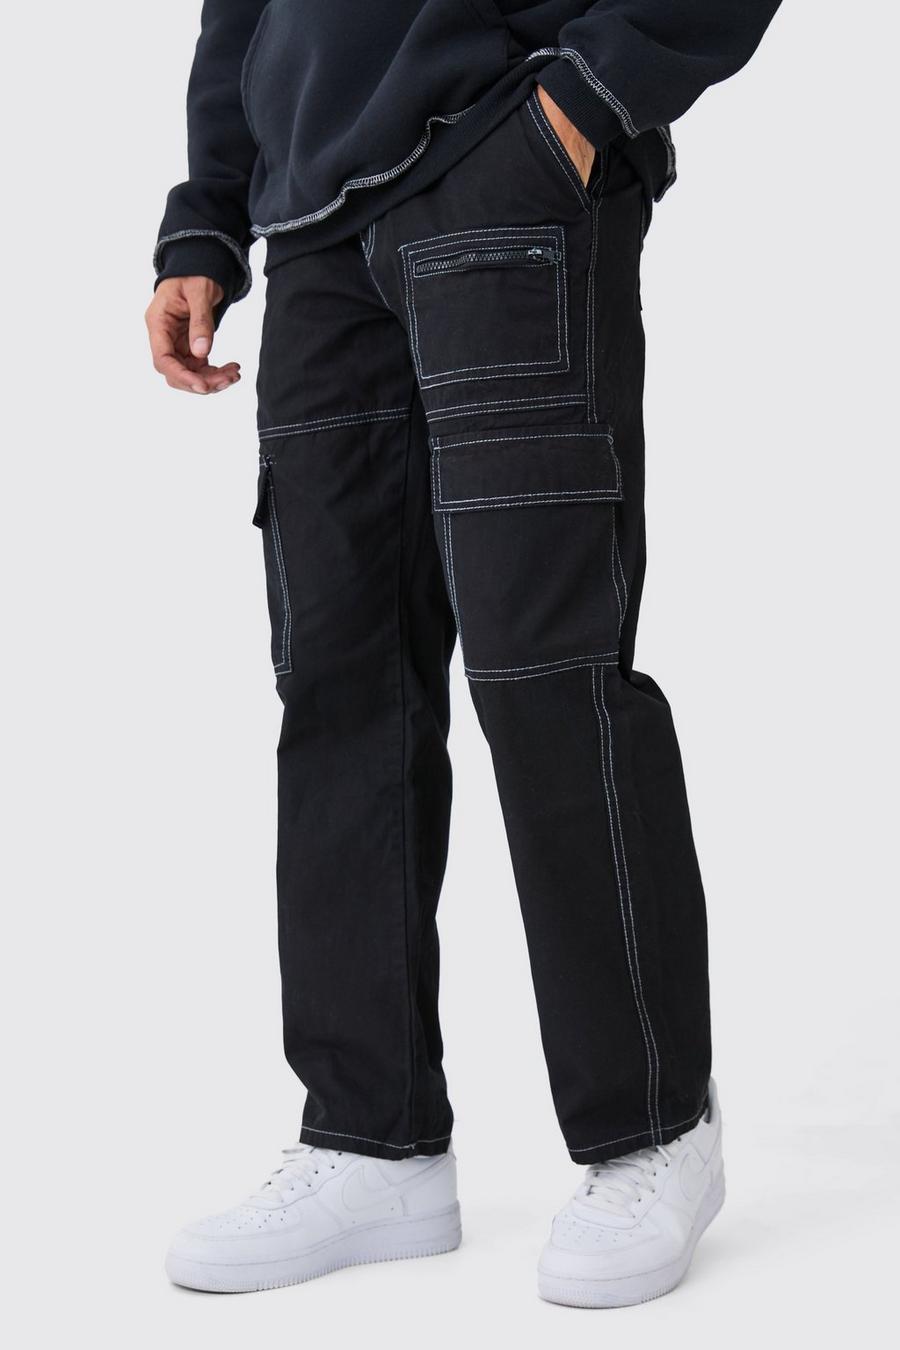 Lockere Hose mit Cargo-Taschen und Kontrast-Naht, Black